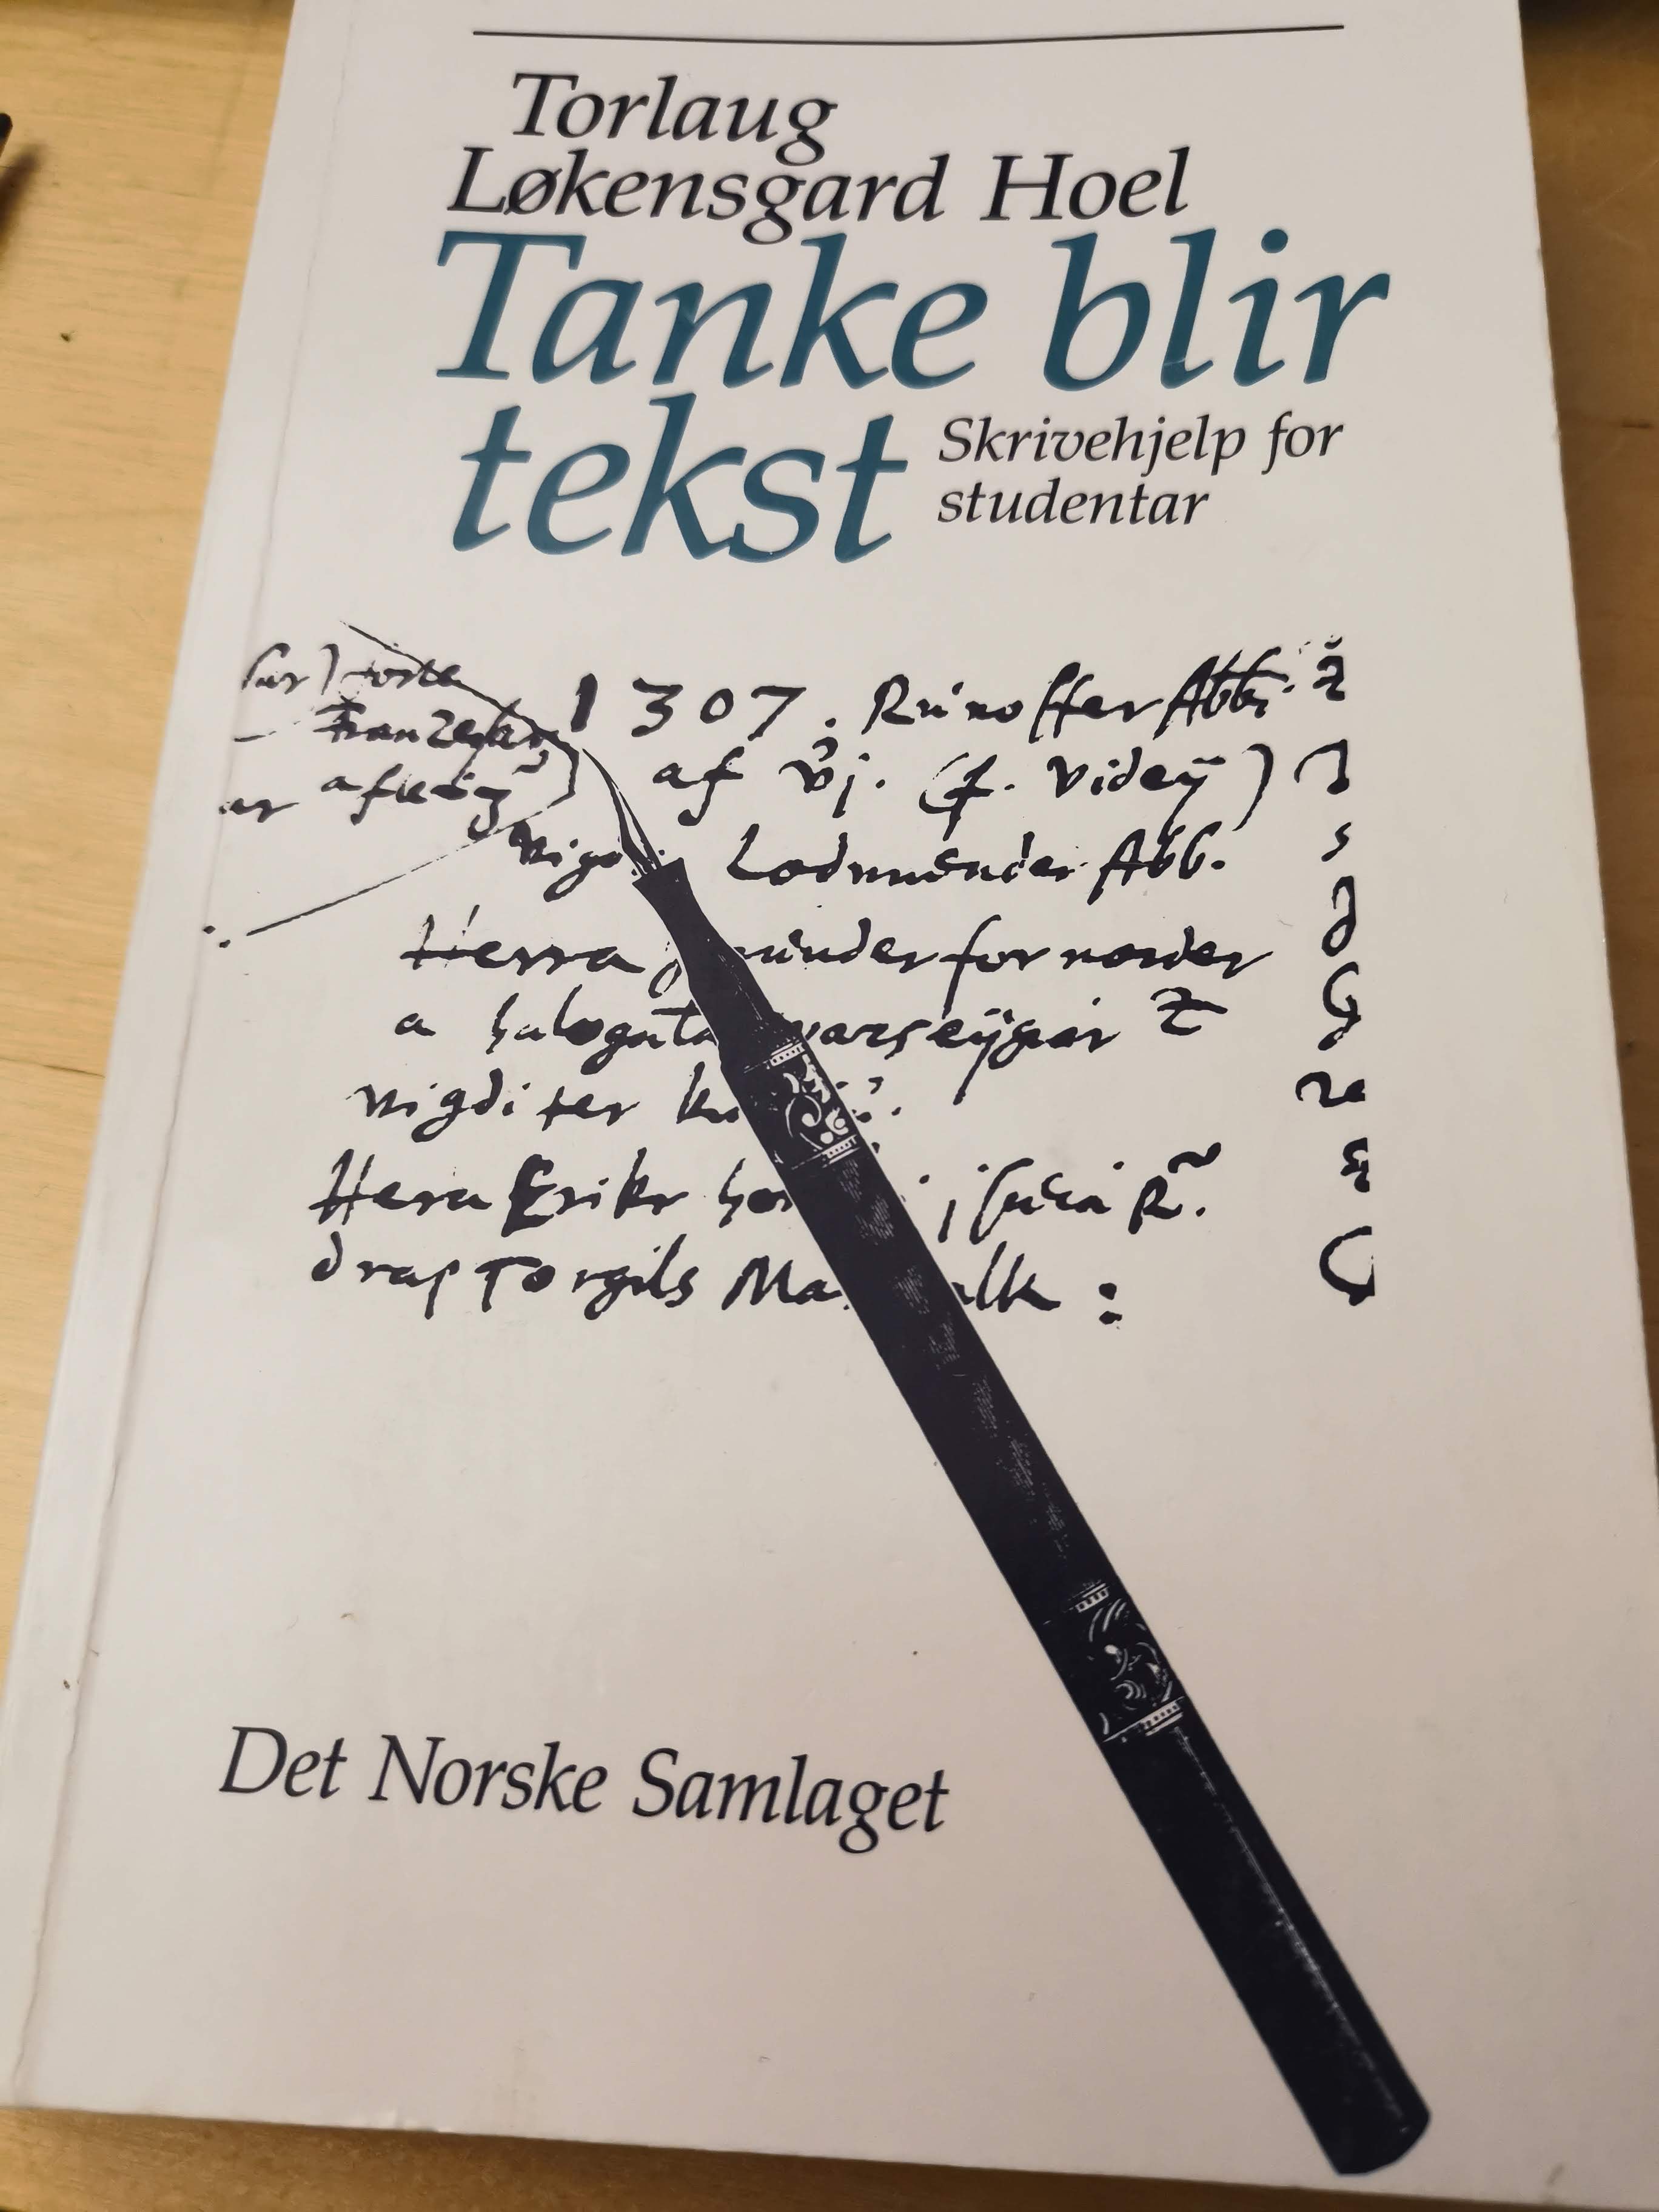 Tanke blir tekst; Torlaug Løkensgard Hoel; 2007